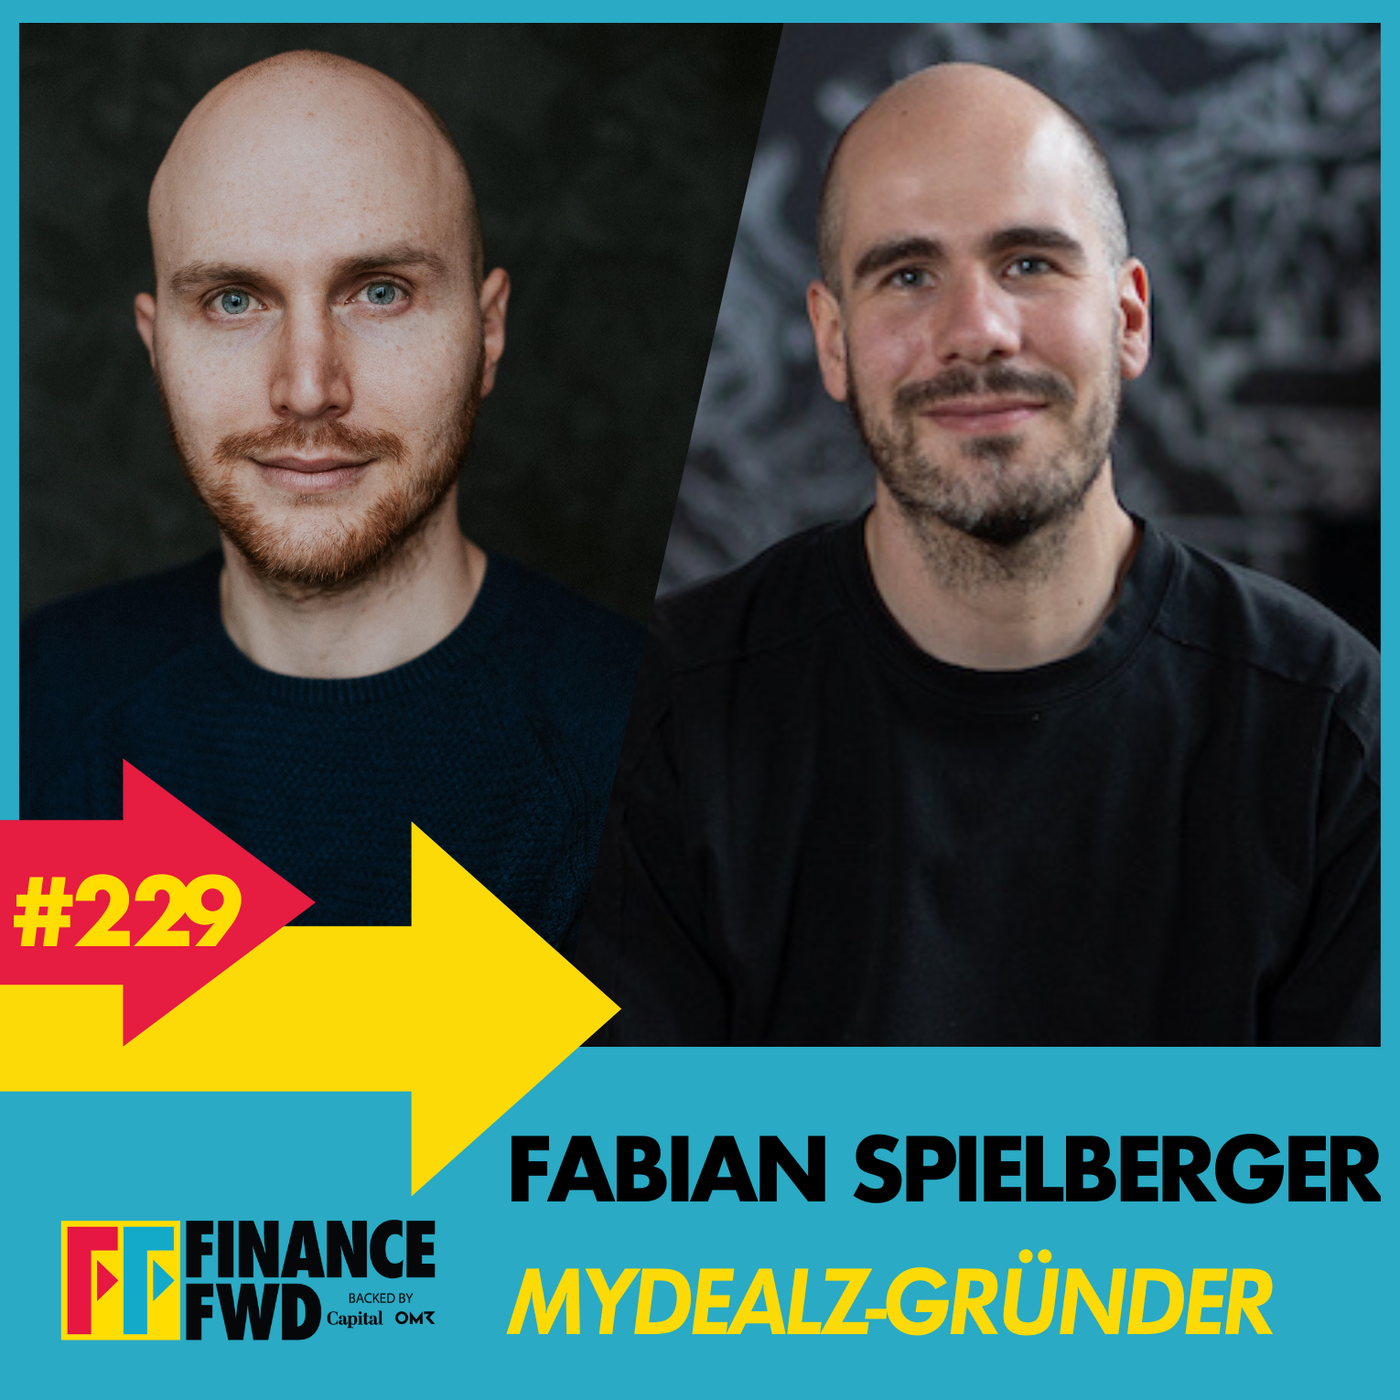 FinanceFWD #229 mit Mydealz-Gründer Fabian Spielberger